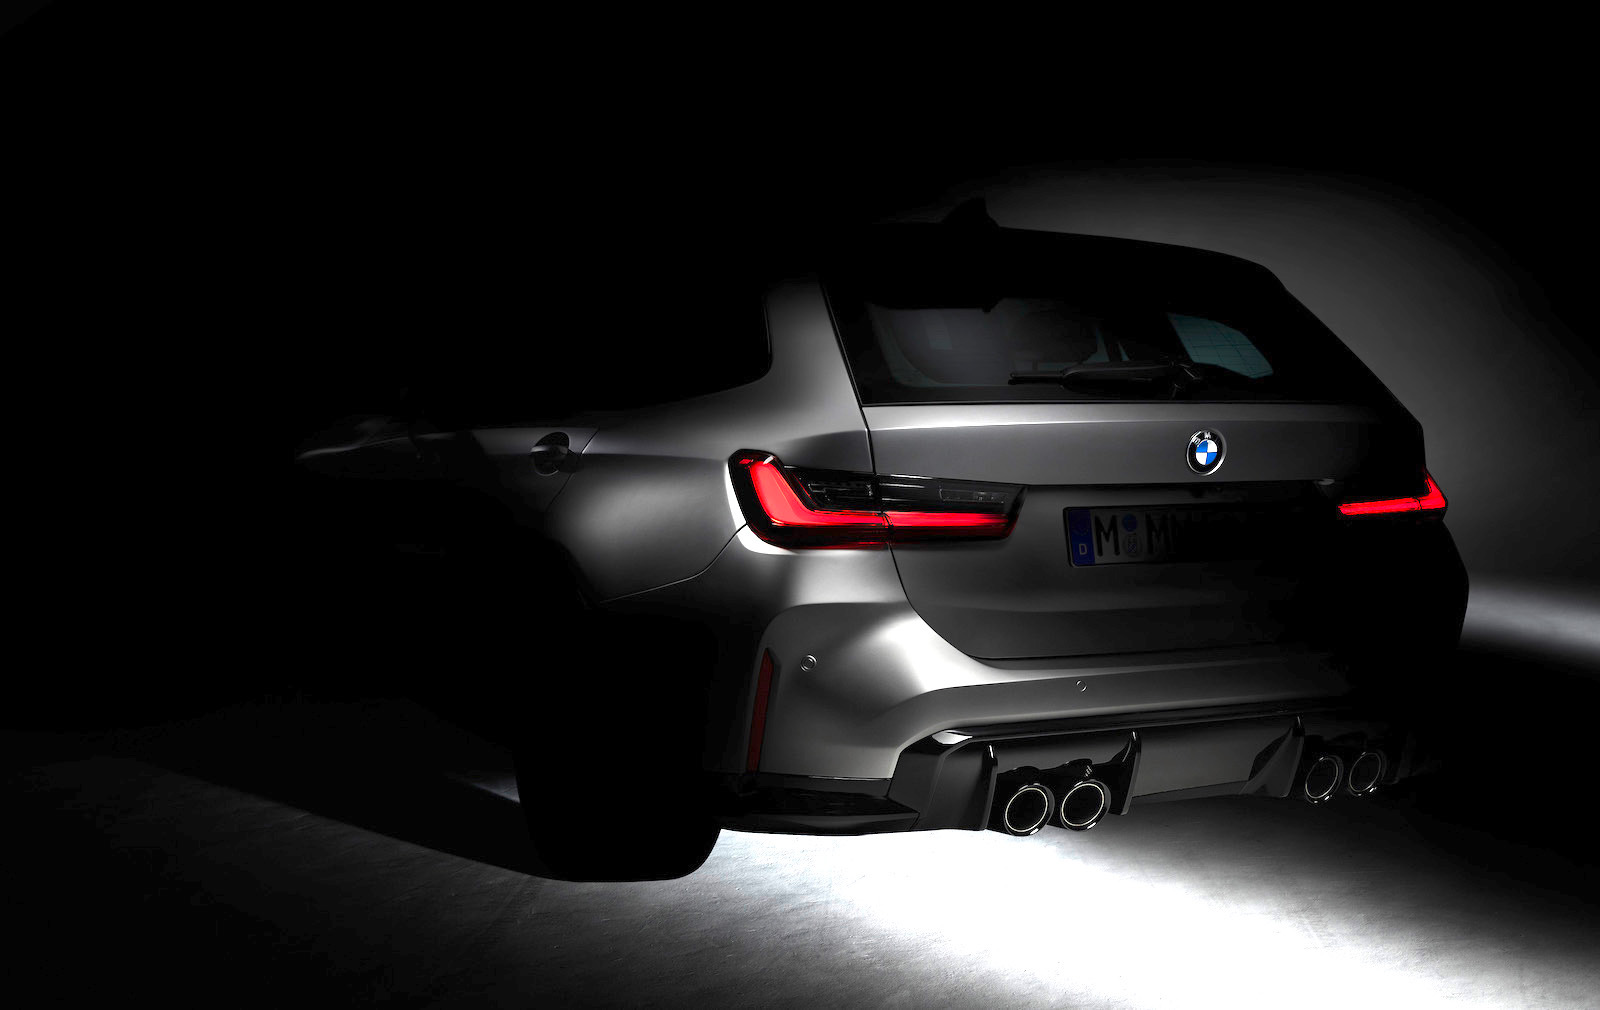 2023 BMW M3 Touring confirmed, development underway